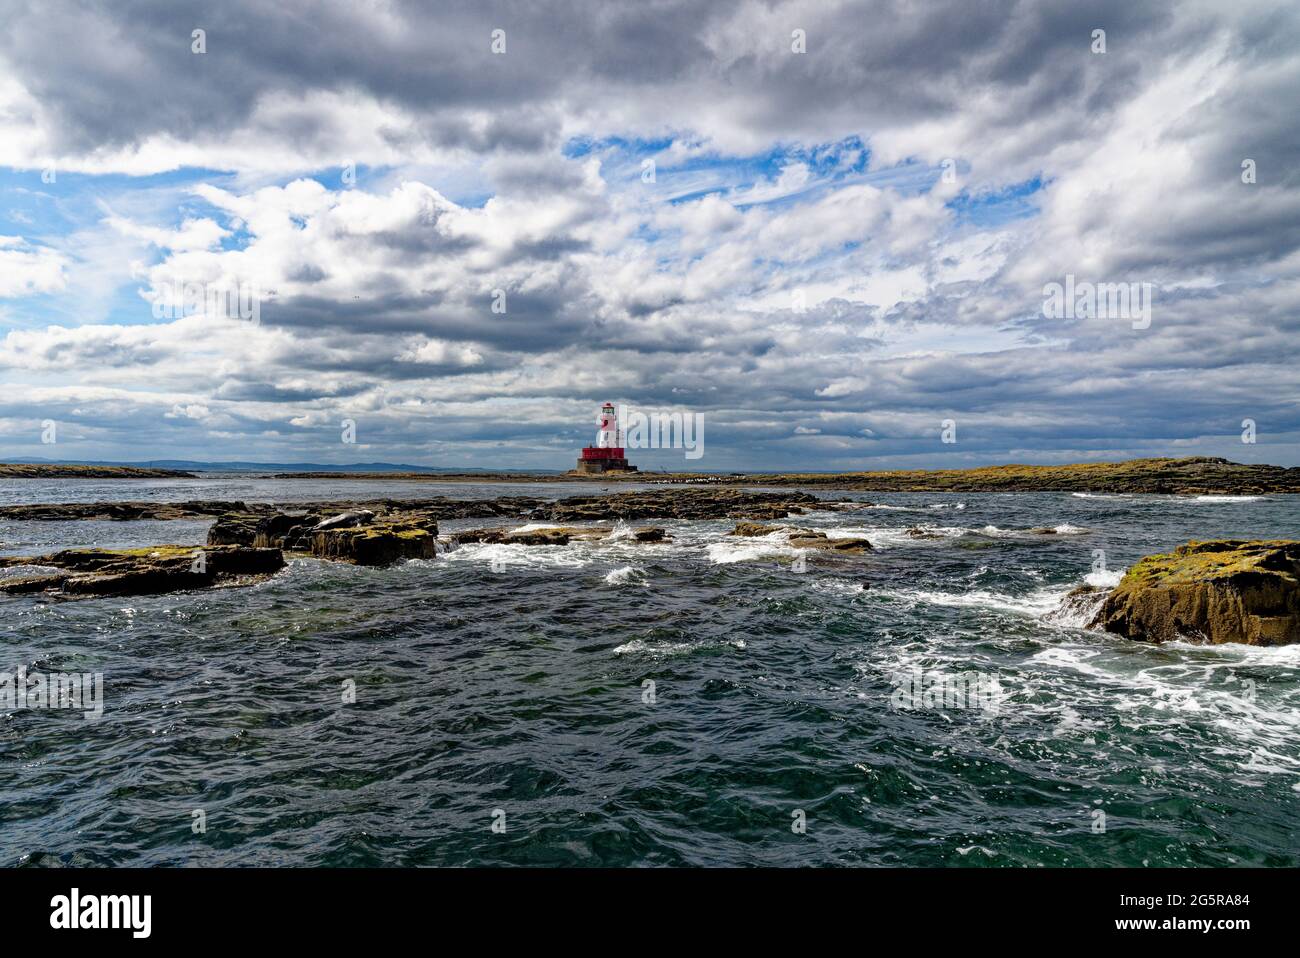 LONGSTONE Lighthouse - situé sur les îles Farne extérieures sur la côte de Northumberland dans le nord de l'Angleterre - Royaume-Uni Banque D'Images